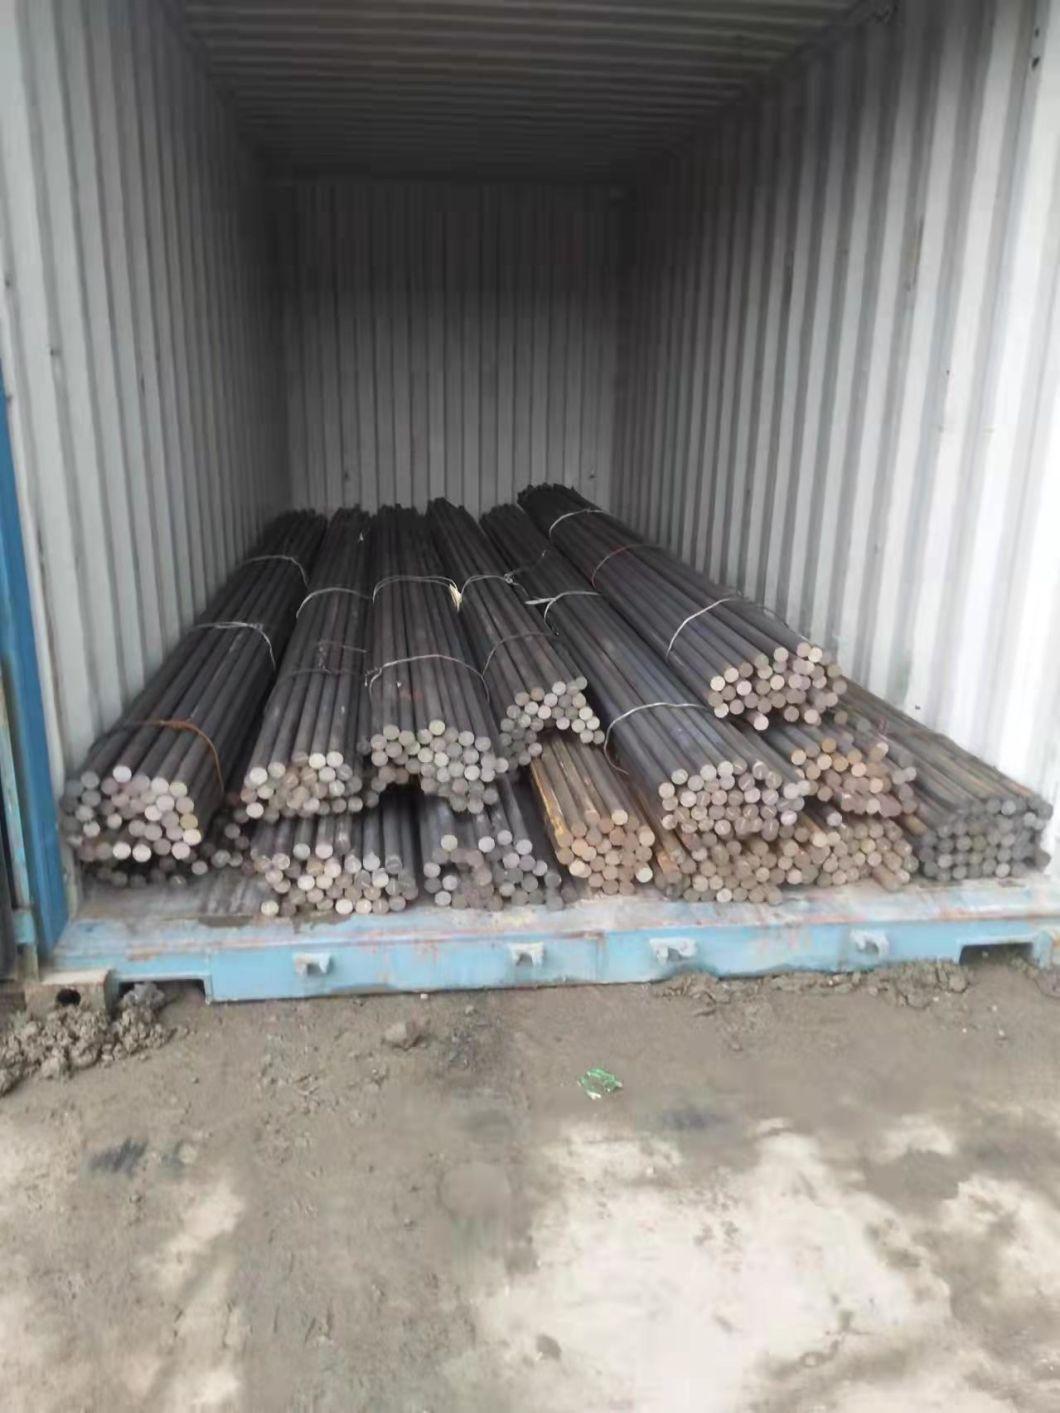 China Supplier 140mm 1045 4140 25mm 20mm 6meters Billets Mild Steel Round Bar St52 Round Bar Price